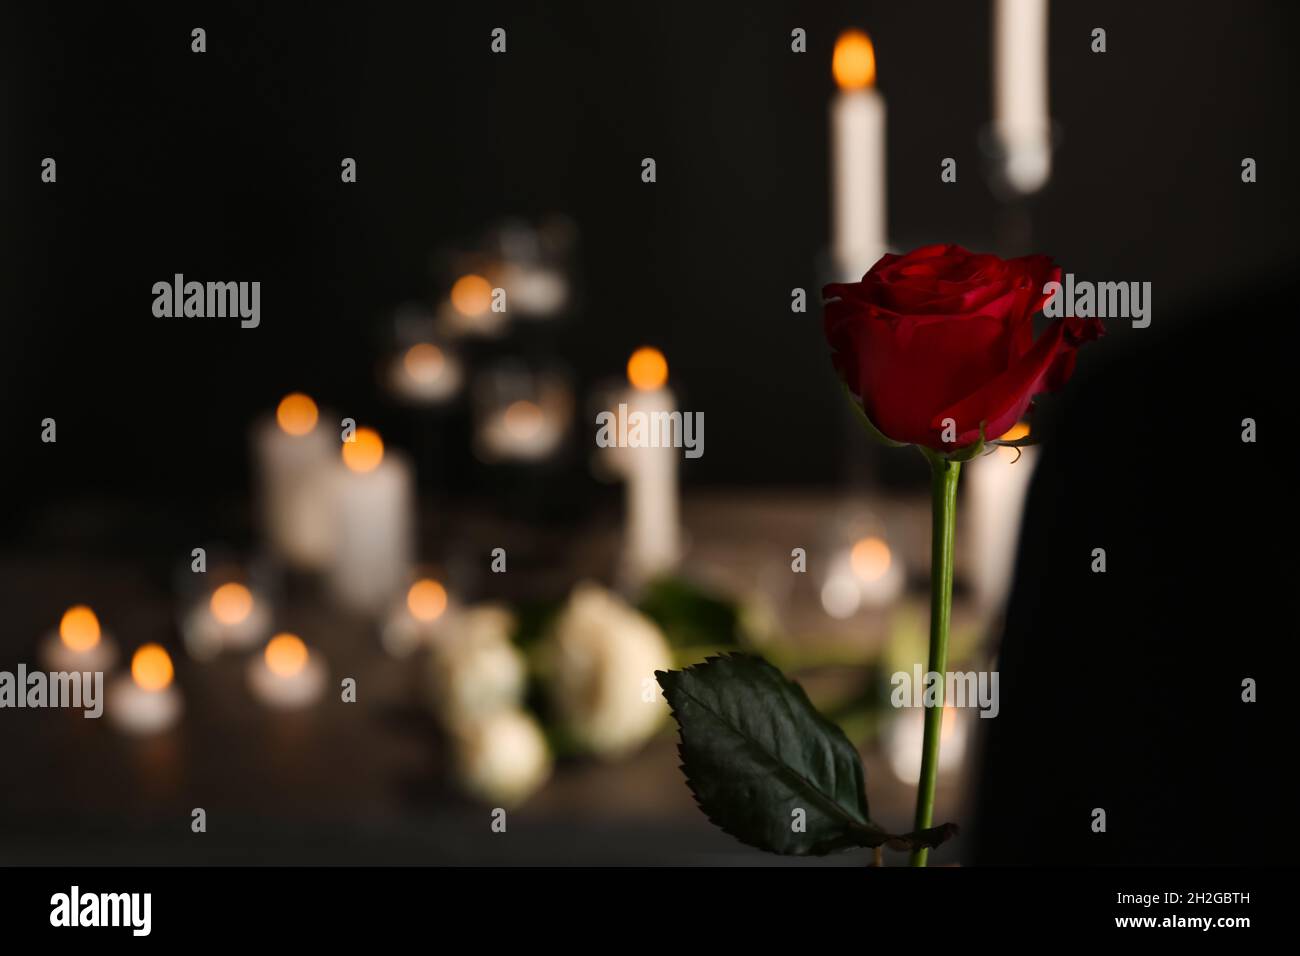 Một bông hoa hồng đỏ đẹp tuyệt vời trên nền mờ hoá là biểu tượng của tang lễ, nhưng cũng có thể mang lại cho chúng ta nhiều ý nghĩa khác nhau. Hãy cùng nhìn lại những kỷ niệm đáng quý và thêm một chút tình cảm và sự hiểu biết vào cuộc sống của mình.